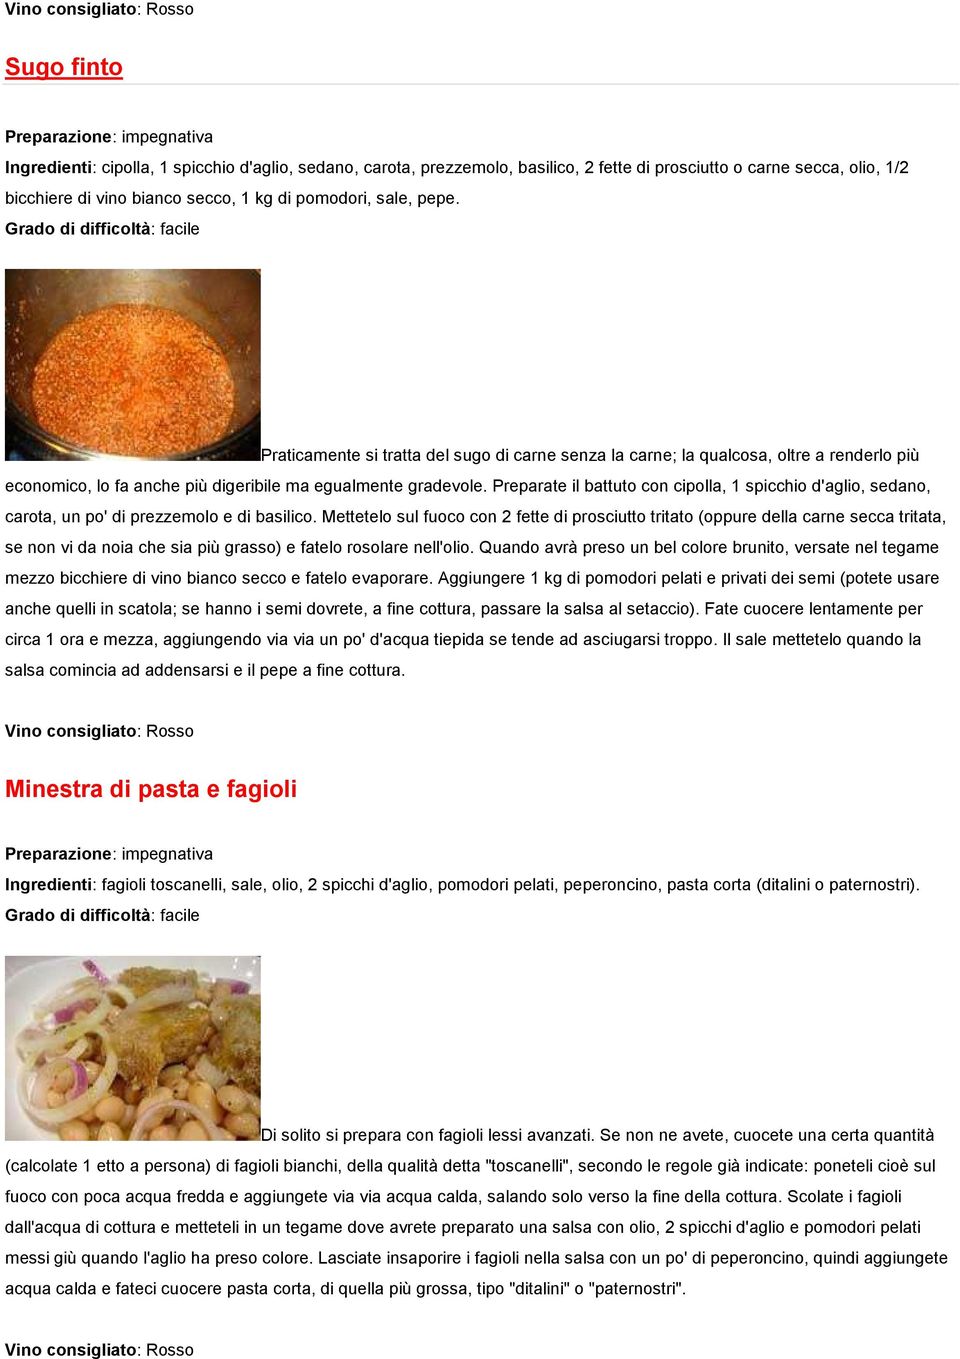 Preparate il battuto con cipolla, 1 spicchio d'aglio, sedano, carota, un po' di prezzemolo e di basilico.